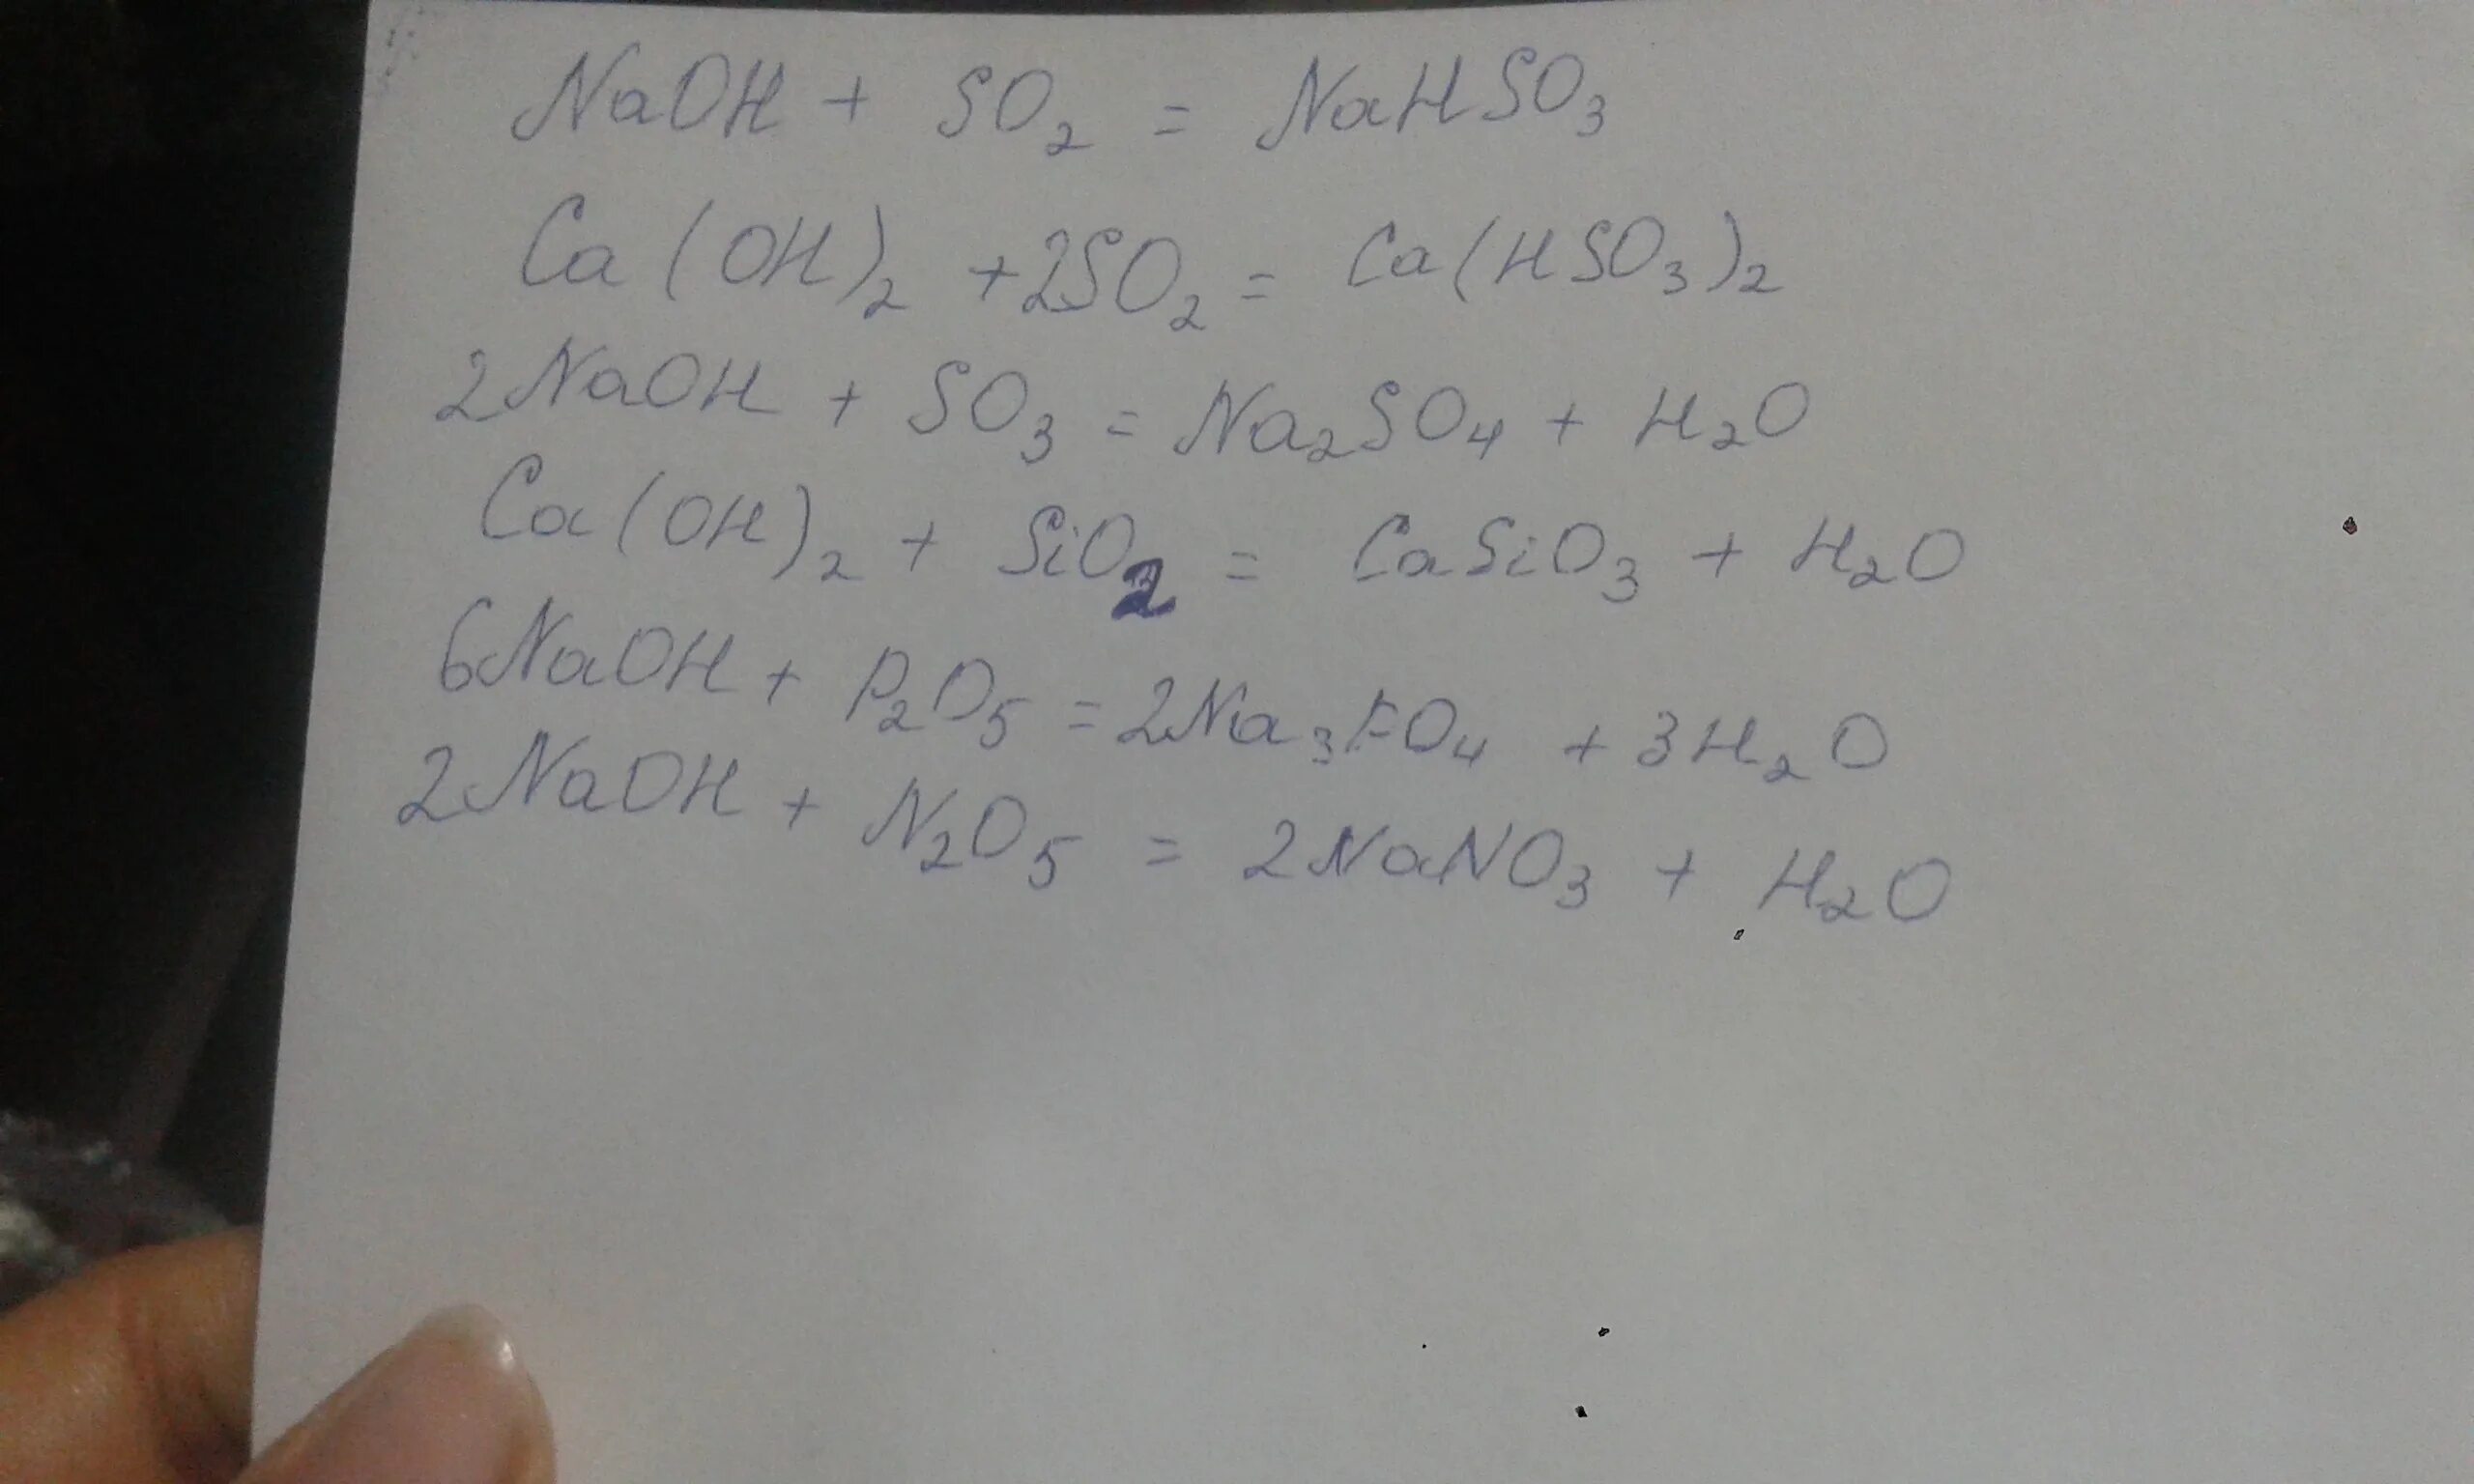 Sr oh 2 sio2. P2o5 CA Oh 2 раствор. CA Oh 2 sio2 уравнение. N2o5 уравнение. CA Oh 2 so2 уравнение.